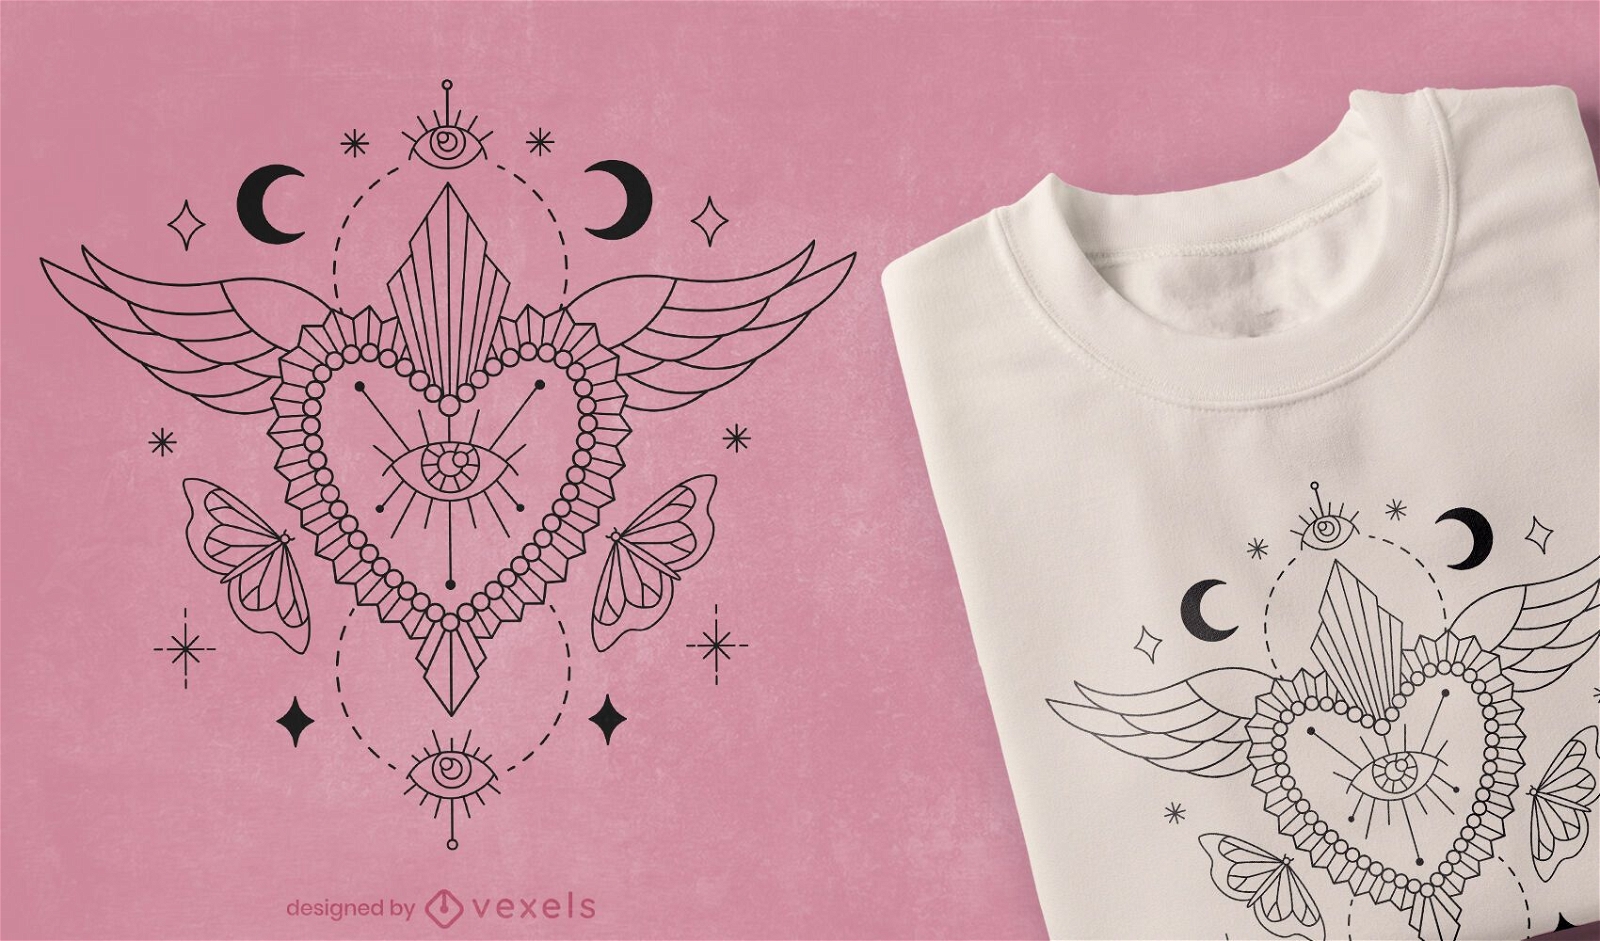 Mystischer Herz-T-Shirt-Entwurf